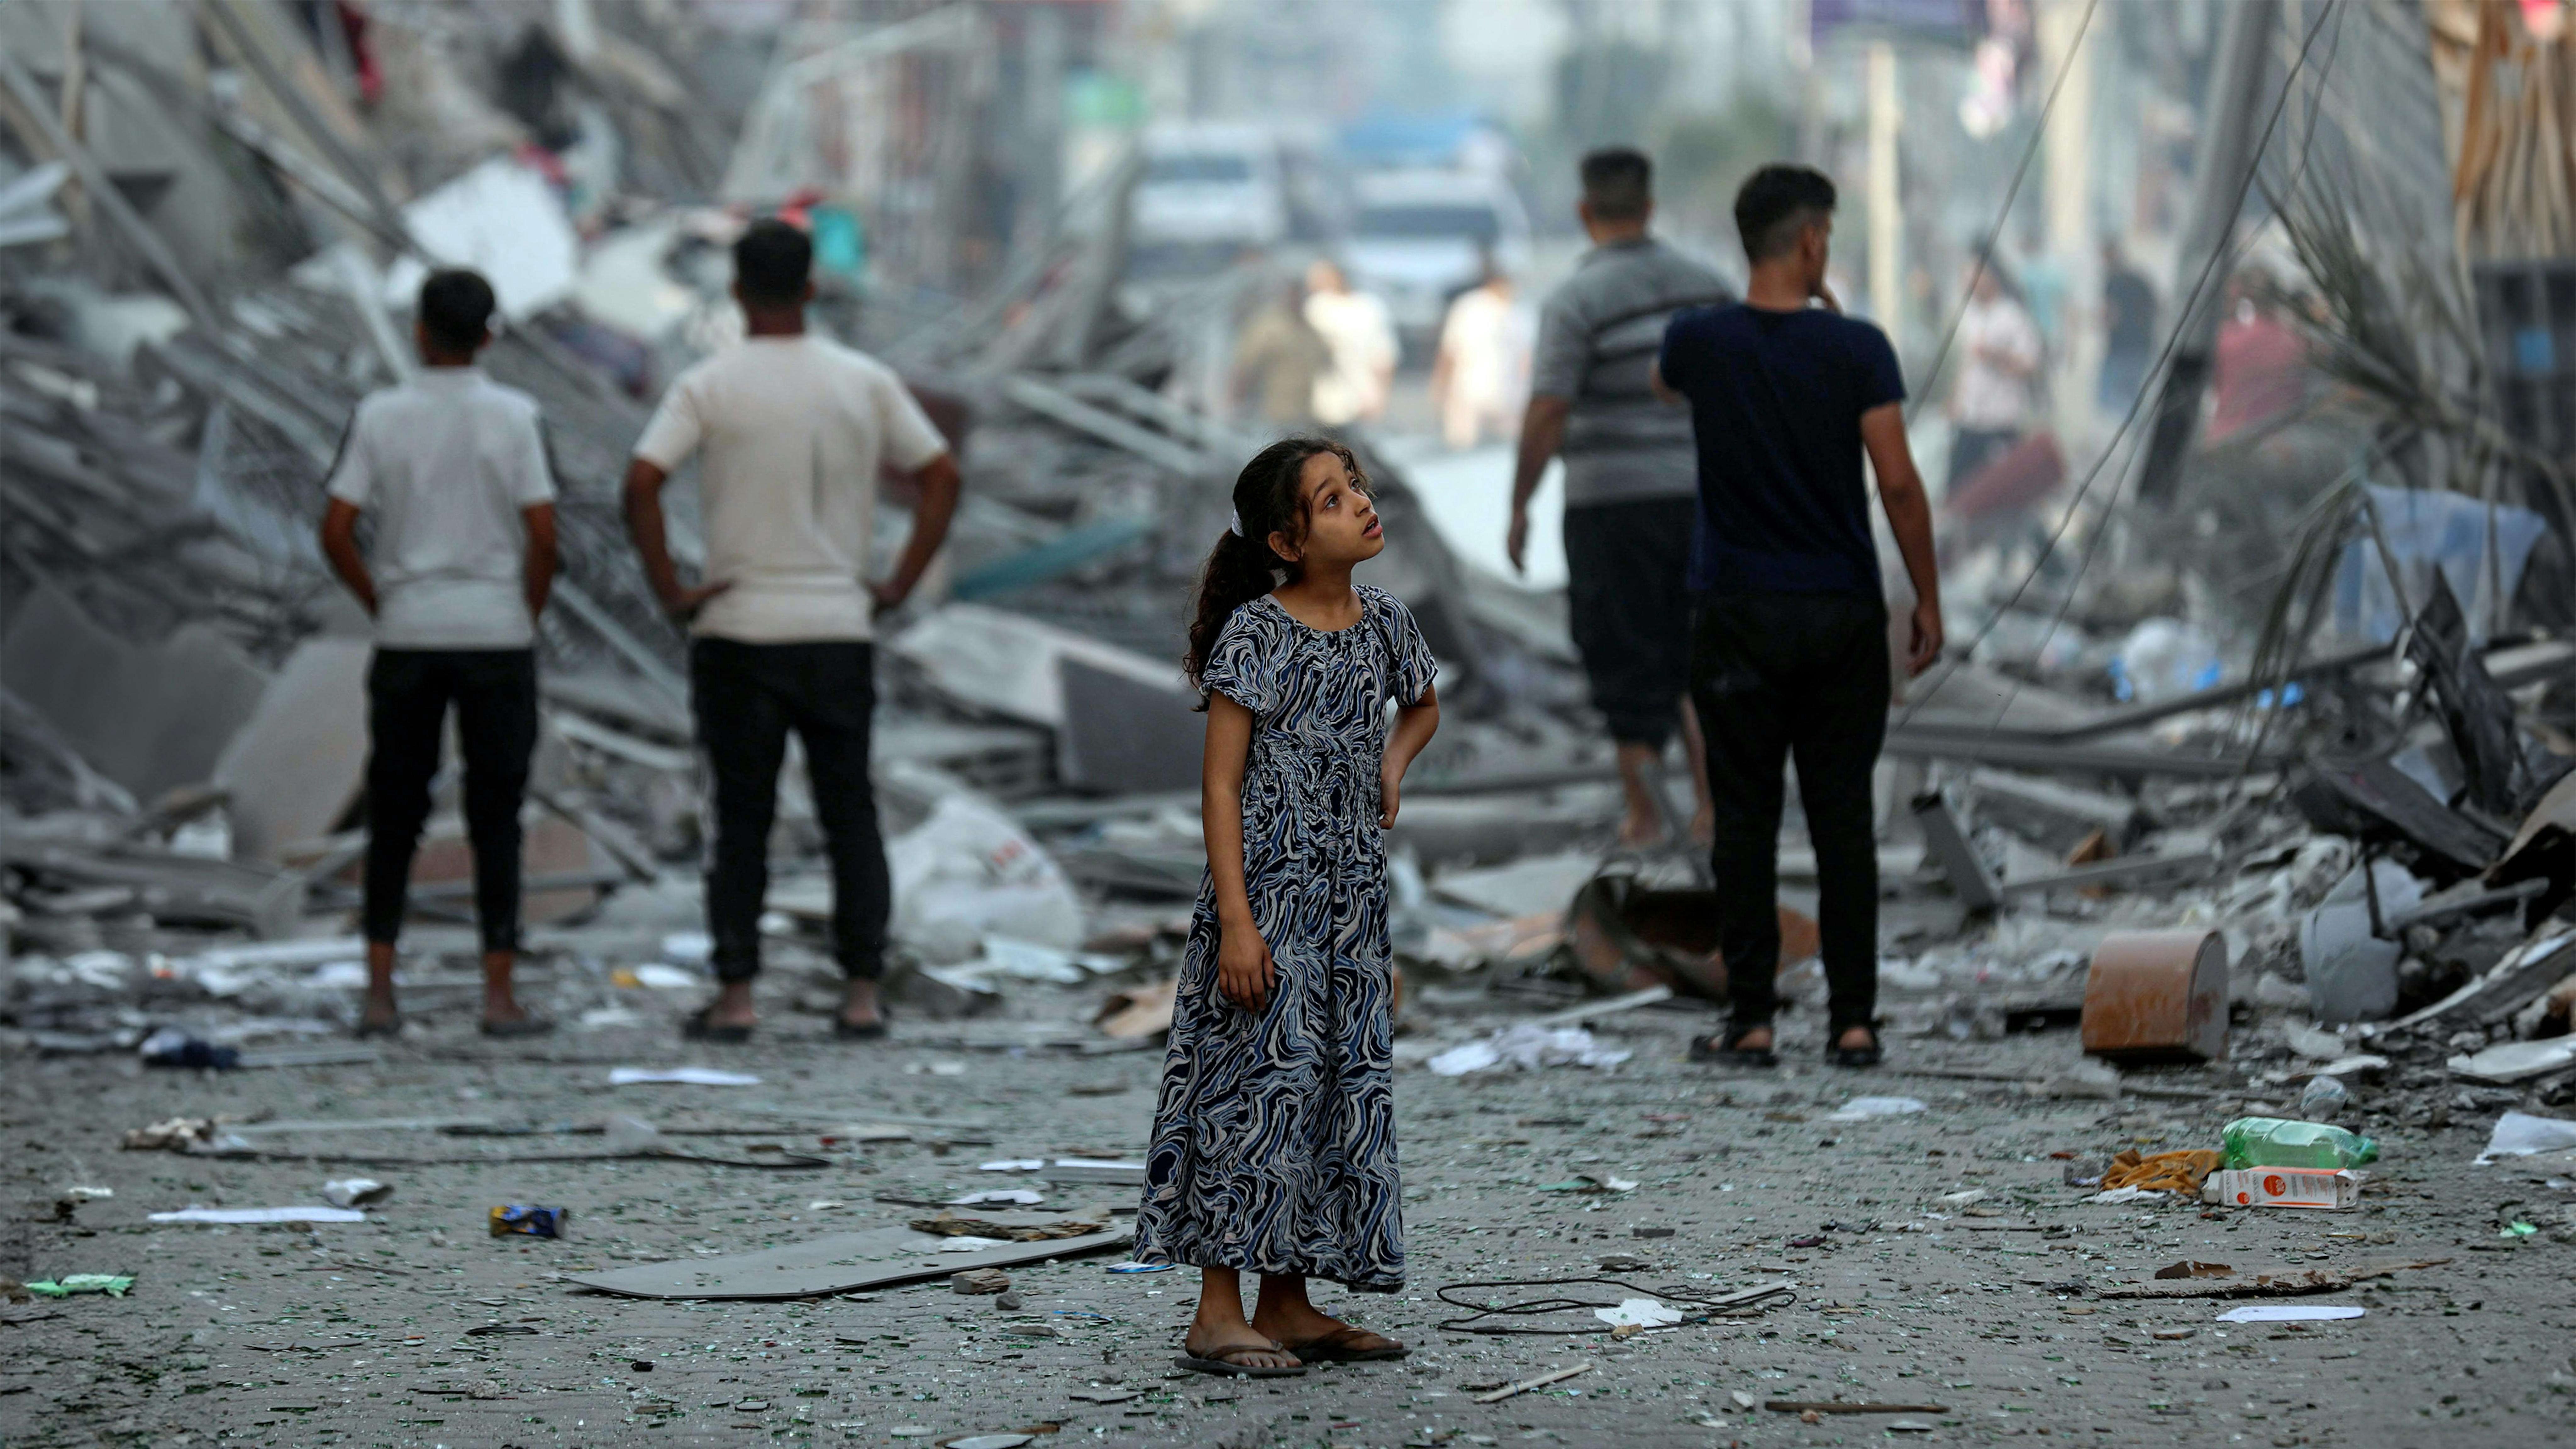 Amal, 7 anni, contempla il suo quartiere dopo che le case vicine sono state rase al suolo. Nessuna parola può descrivere la devastazione che vede.